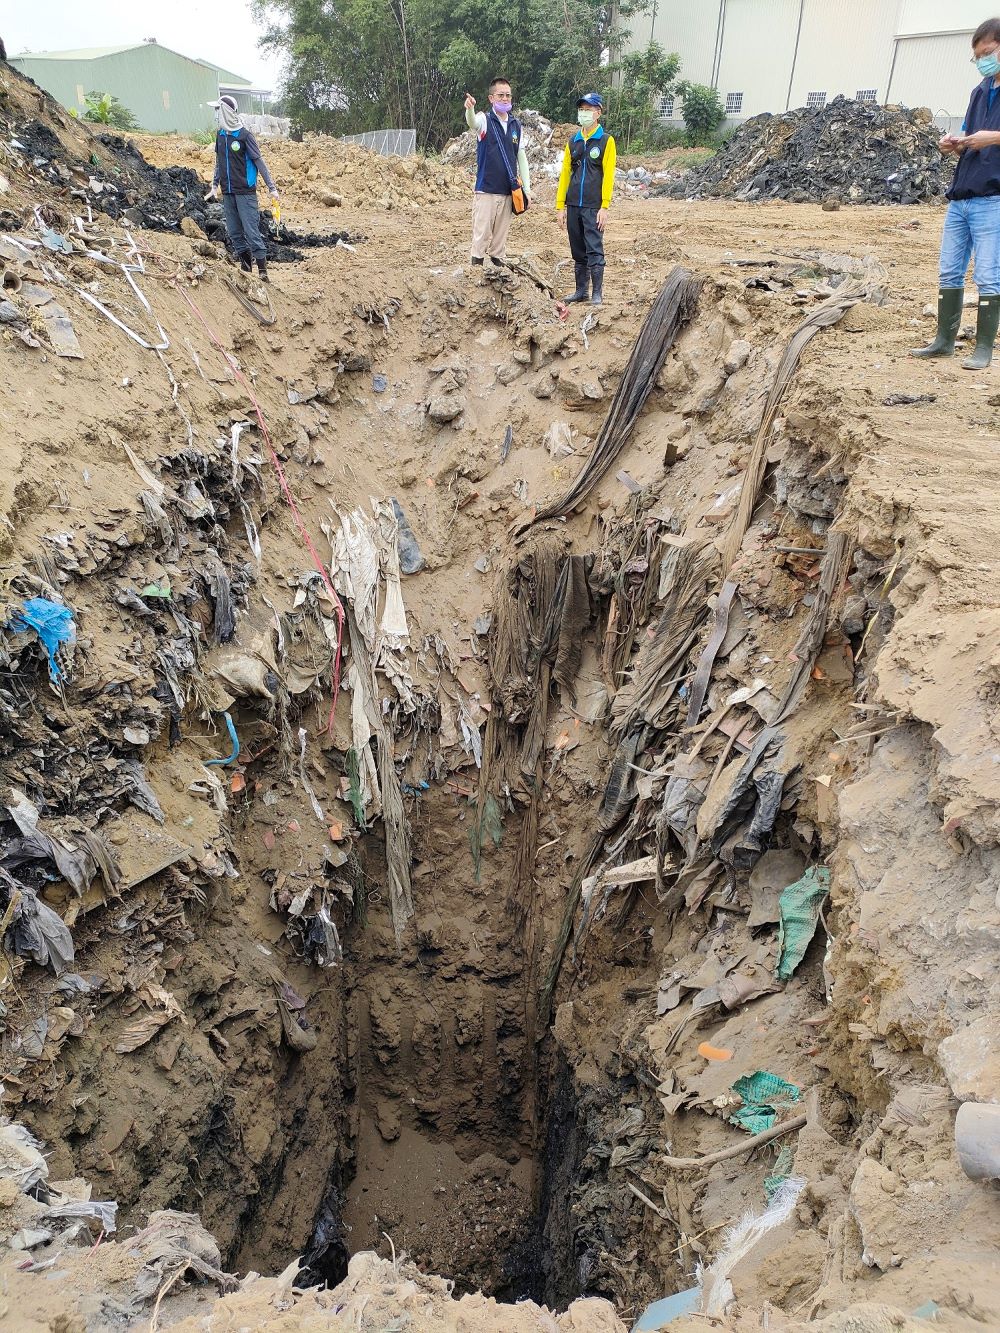 南區大隊勘查開挖7米深之廢棄物坑洞情形-1.jpg